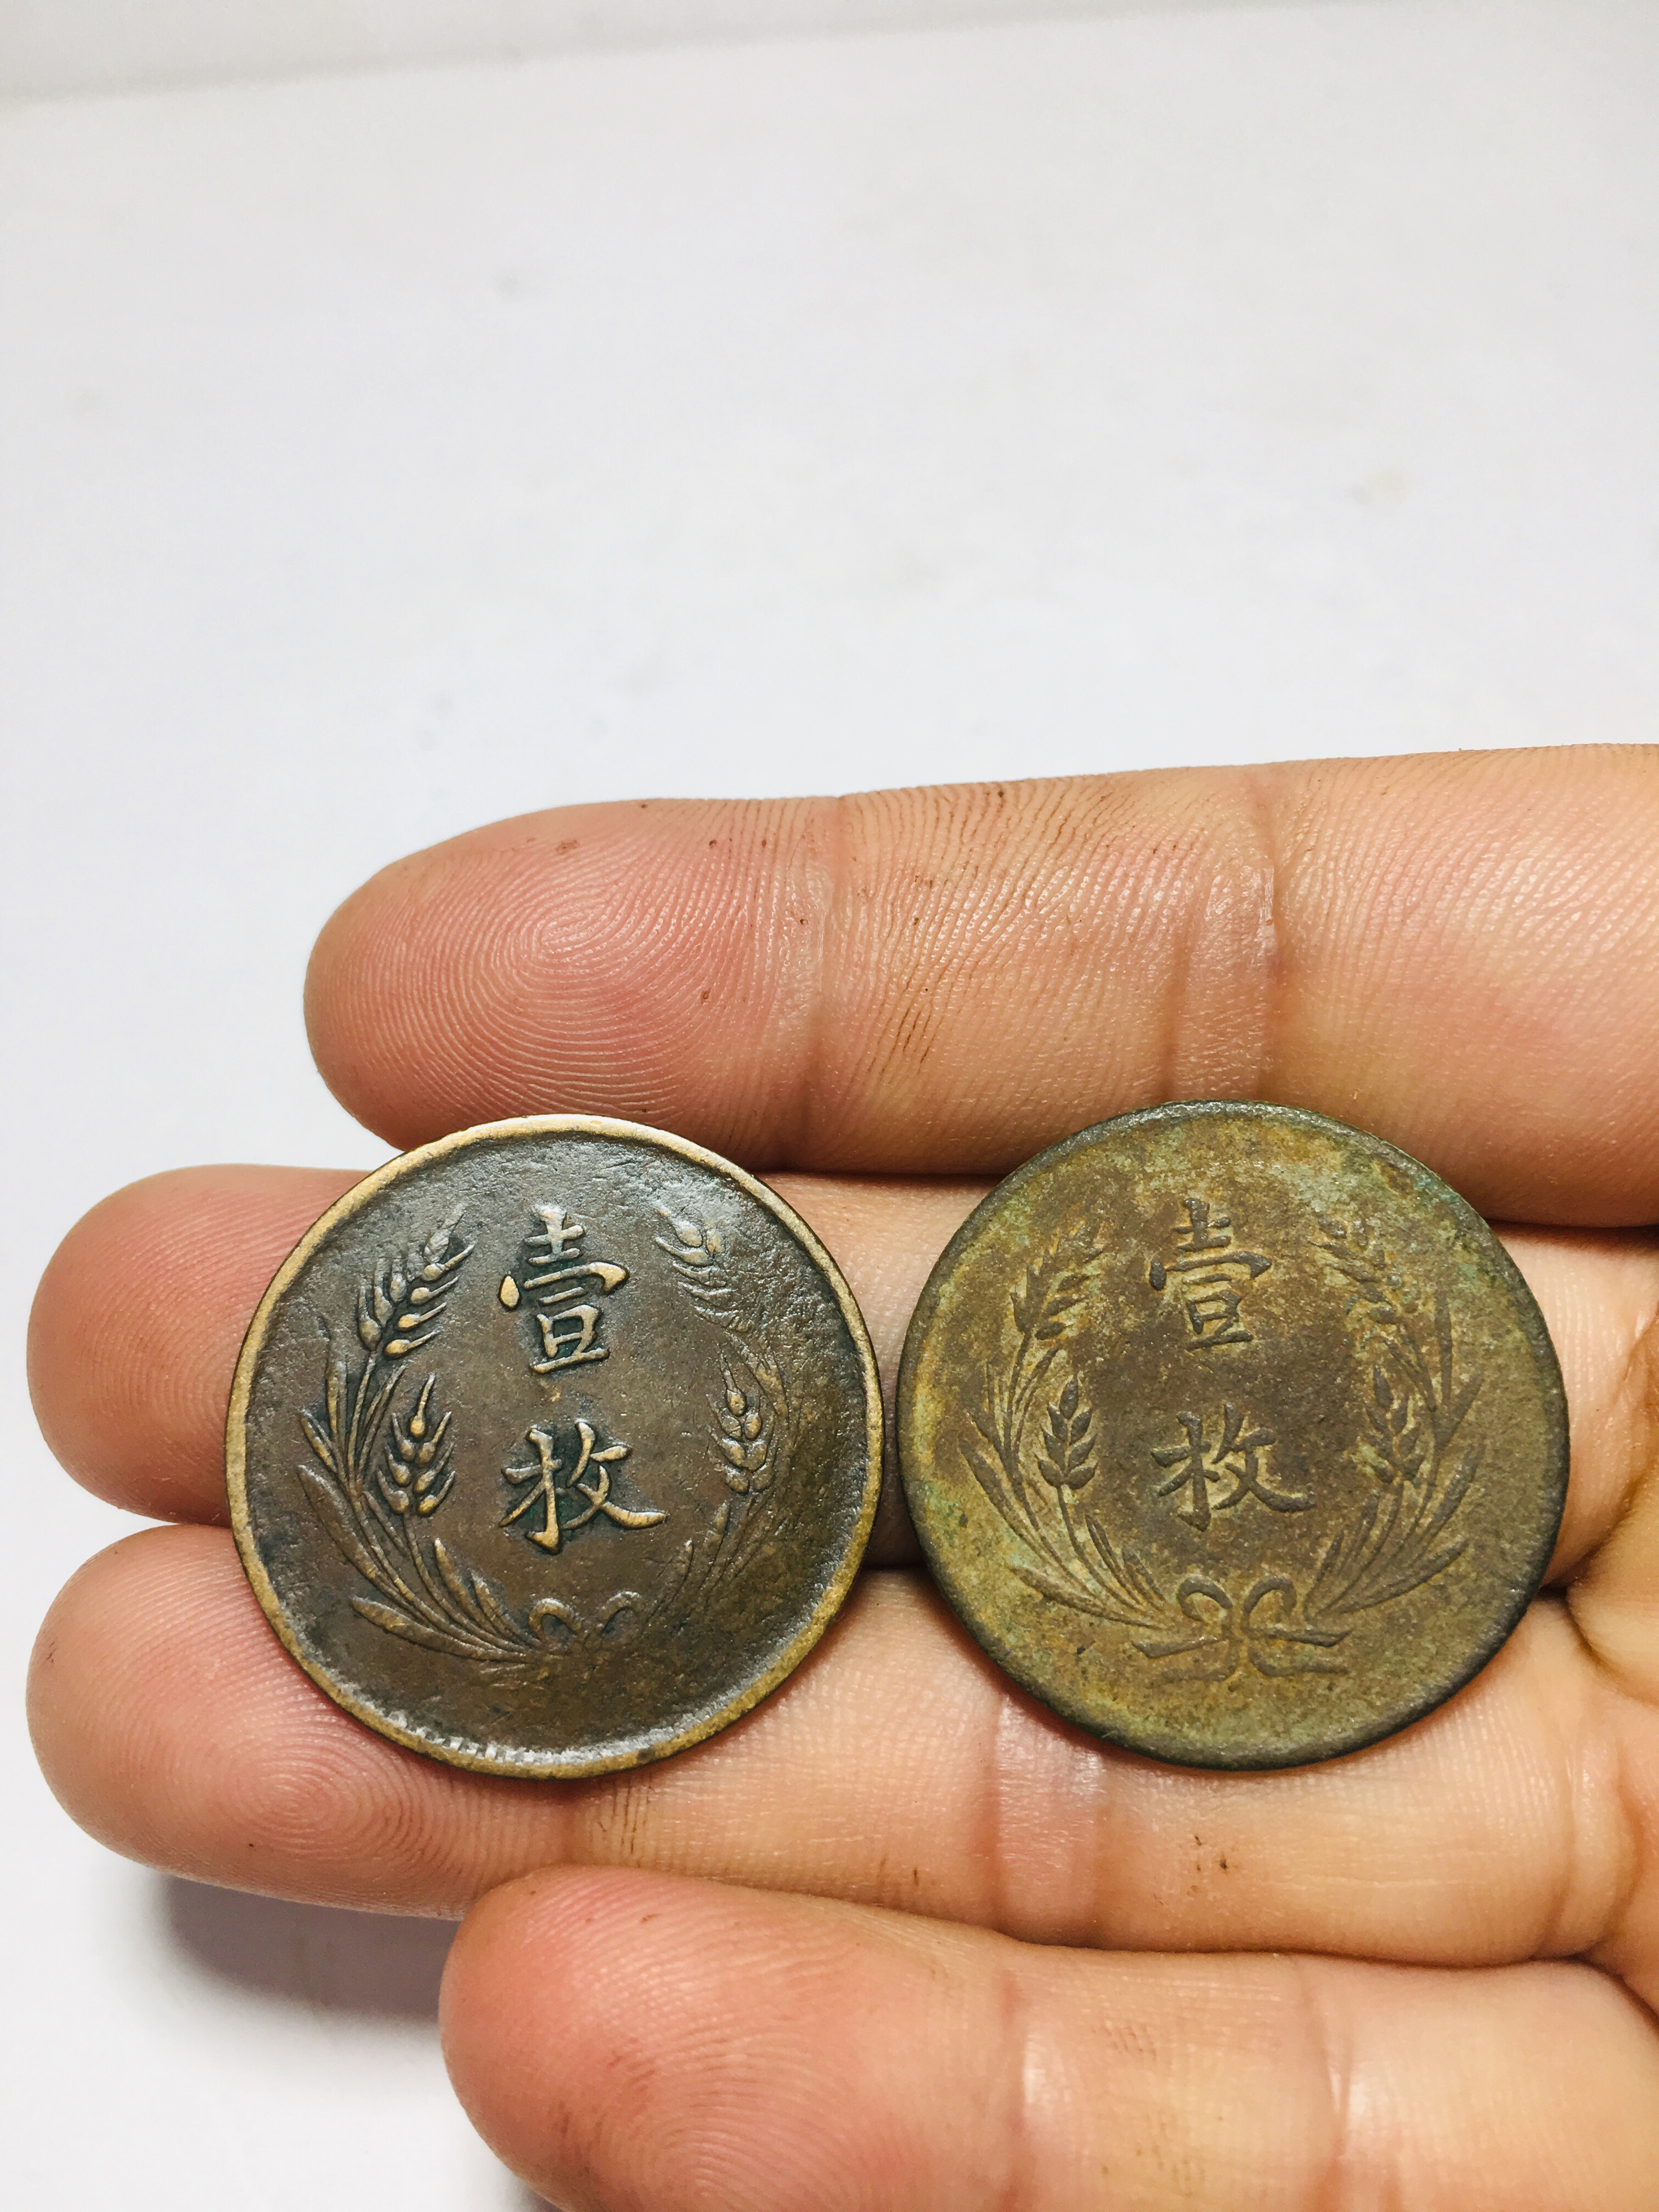 壹枚铜币 价格图片